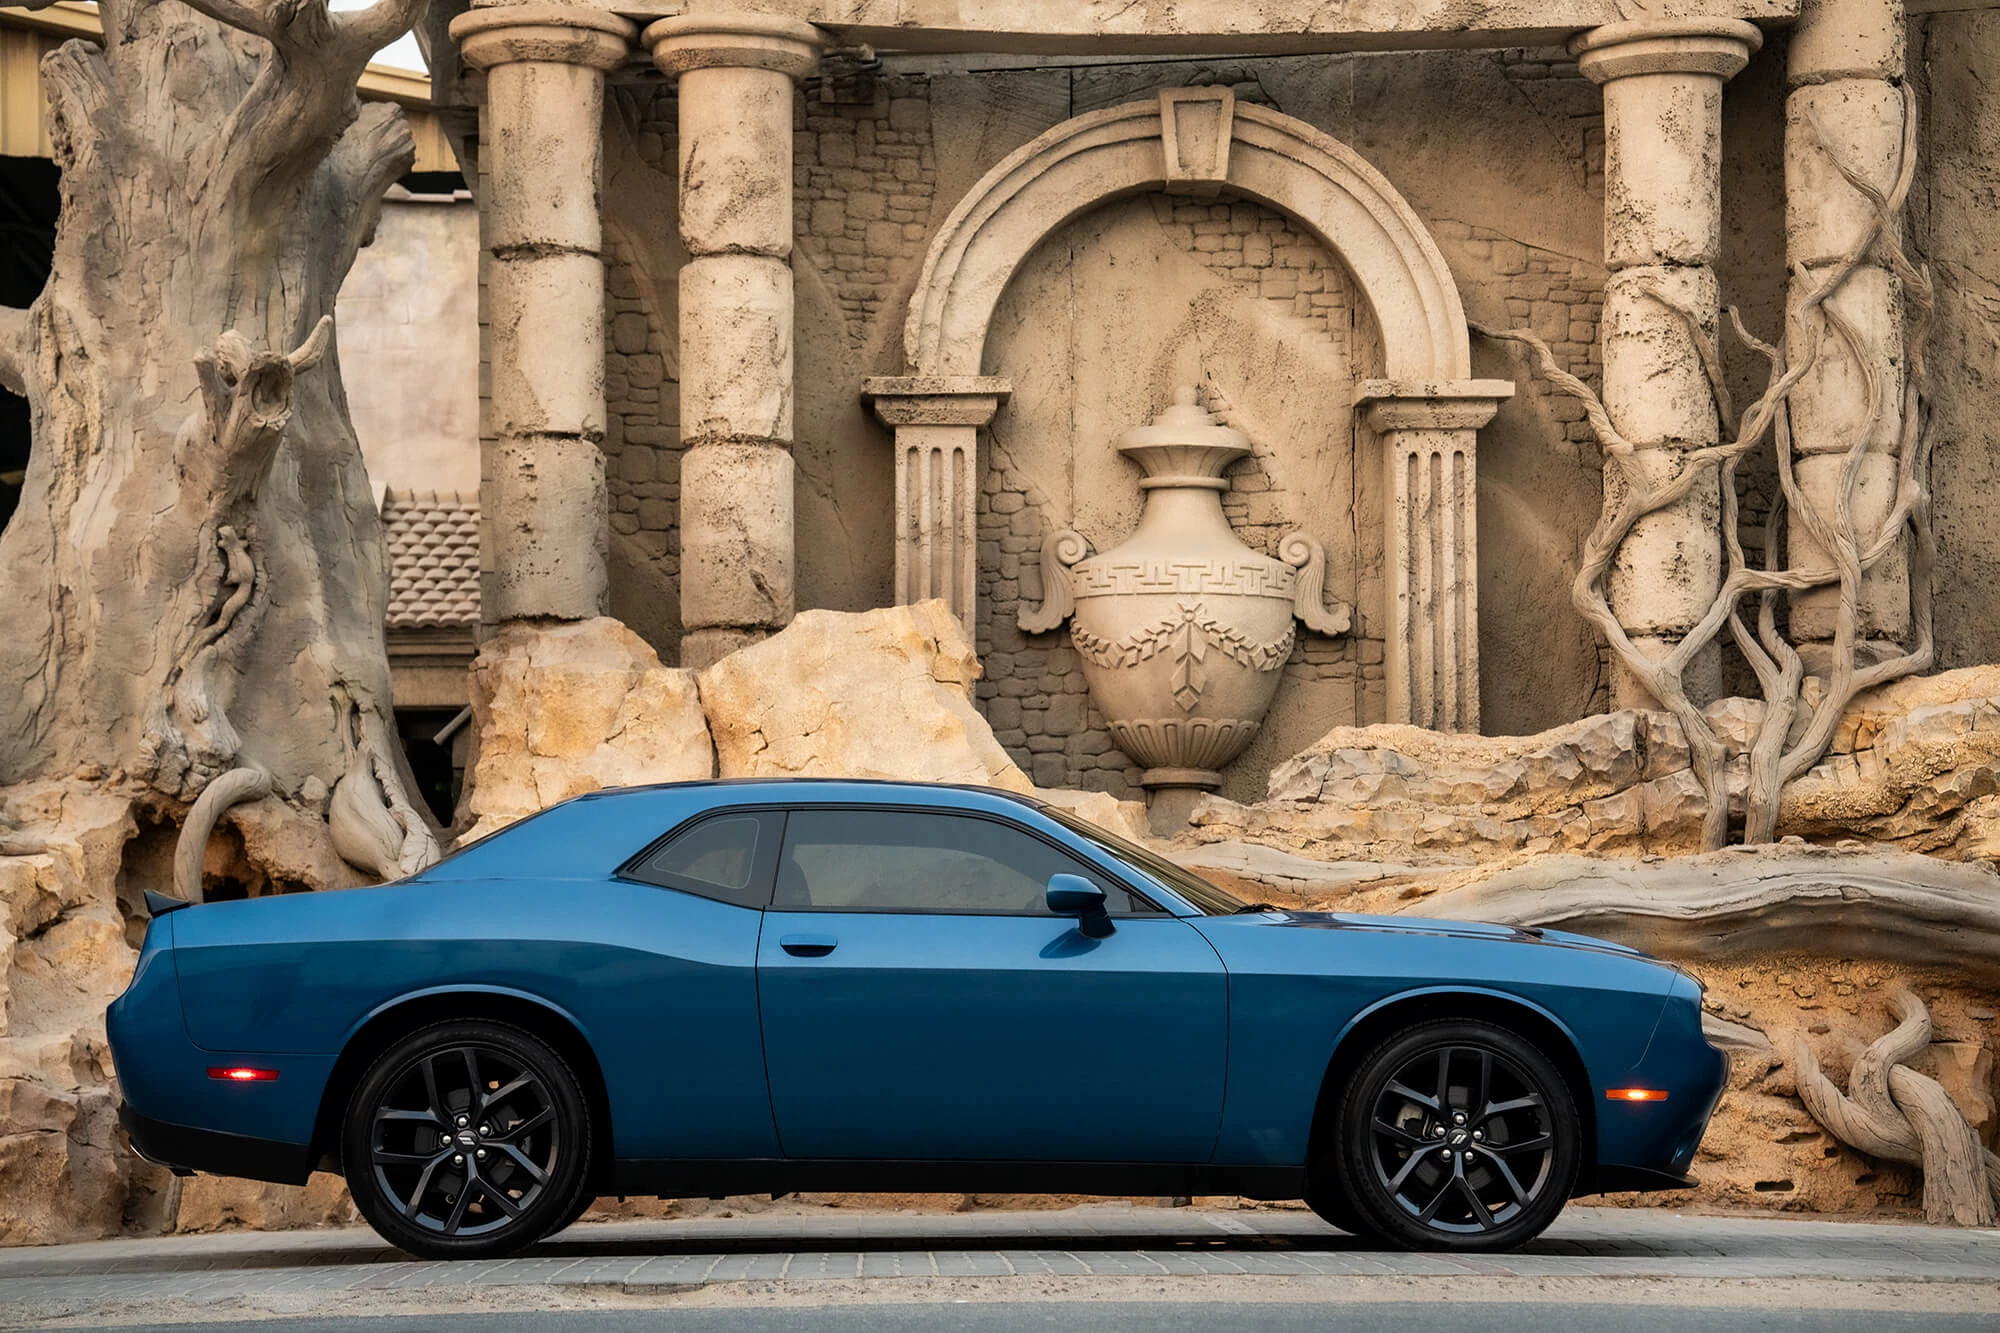 Dodge Challenger blå